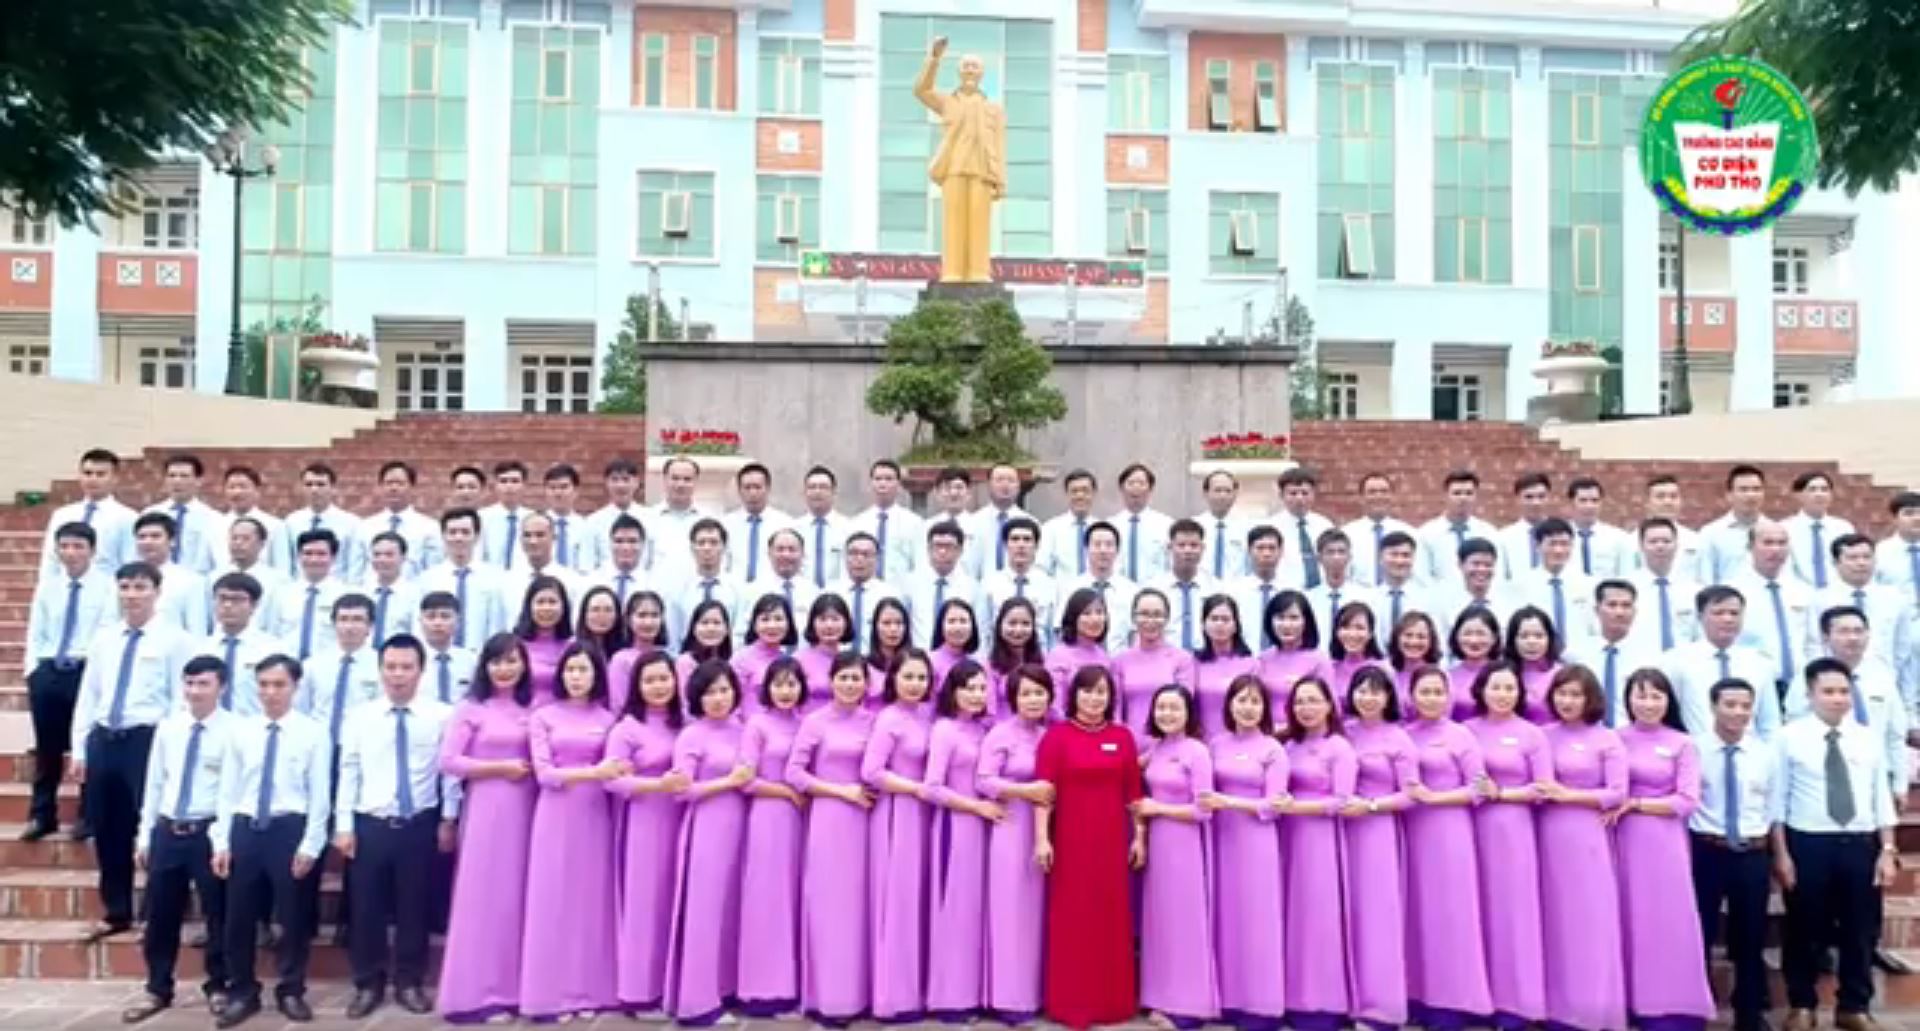 Trường Cao đẳng Cơ điện Phú Thọ - 45 năm phát triển